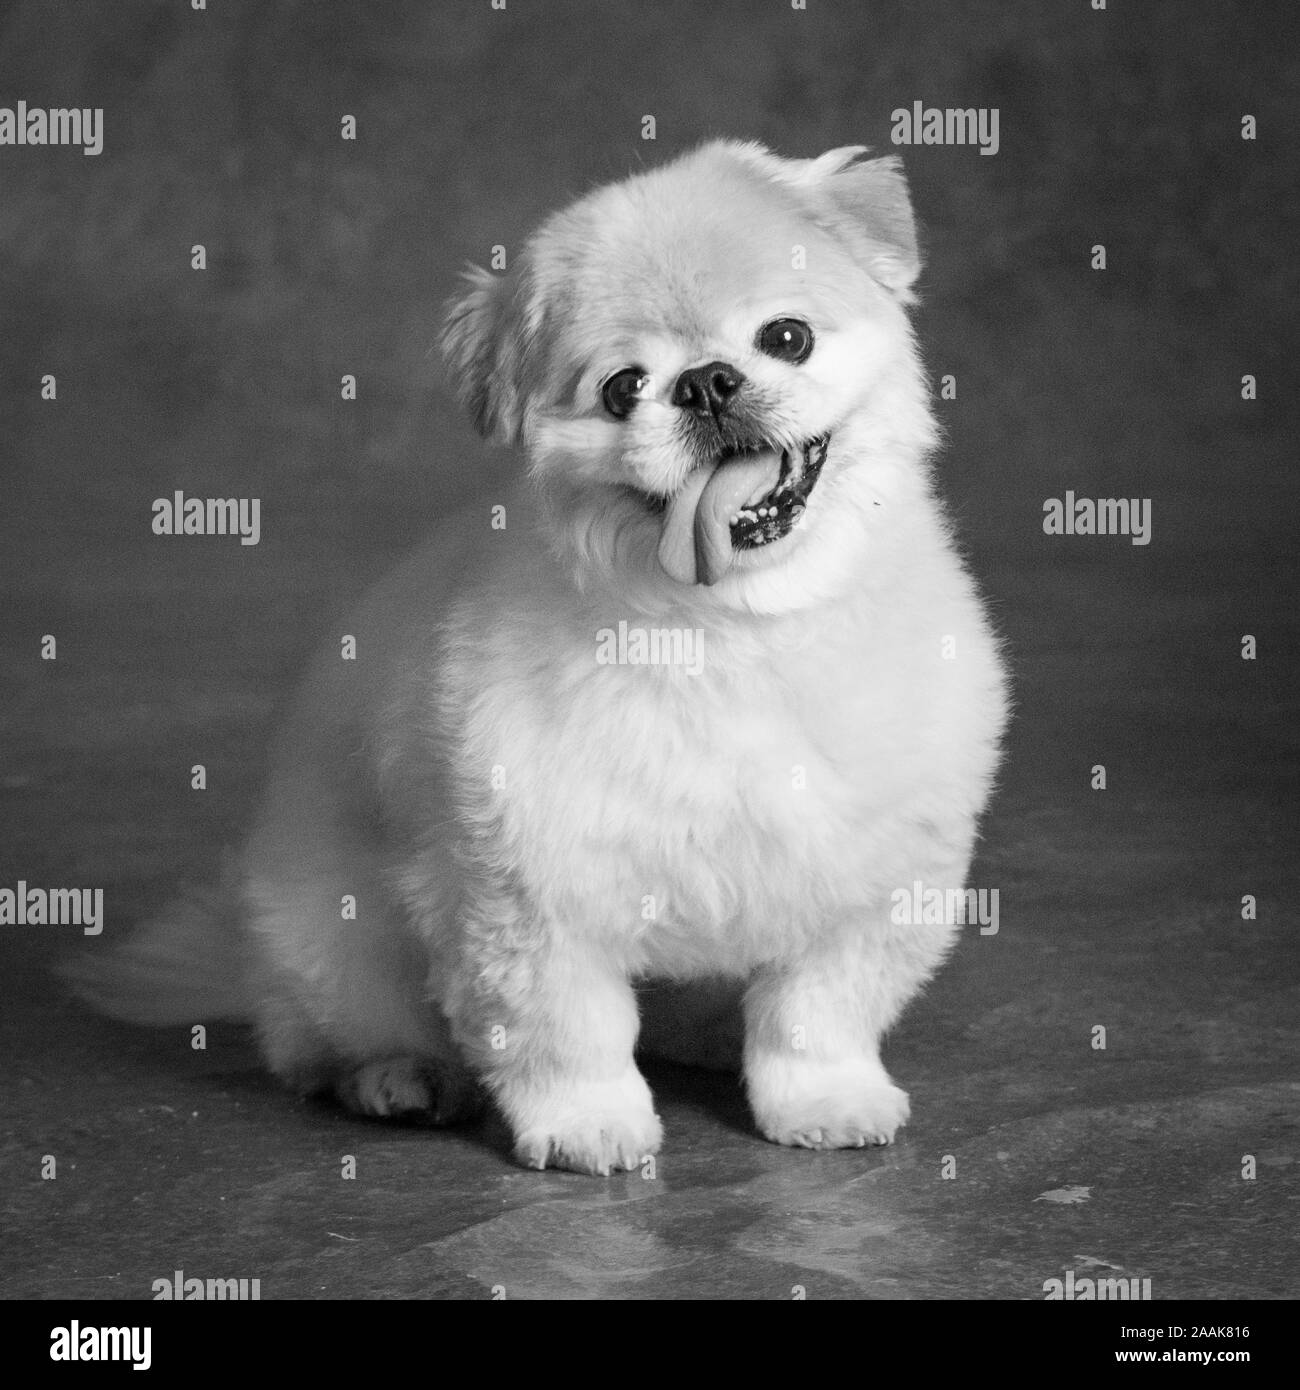 Portrait of Pekingese mix dog Stock Photo